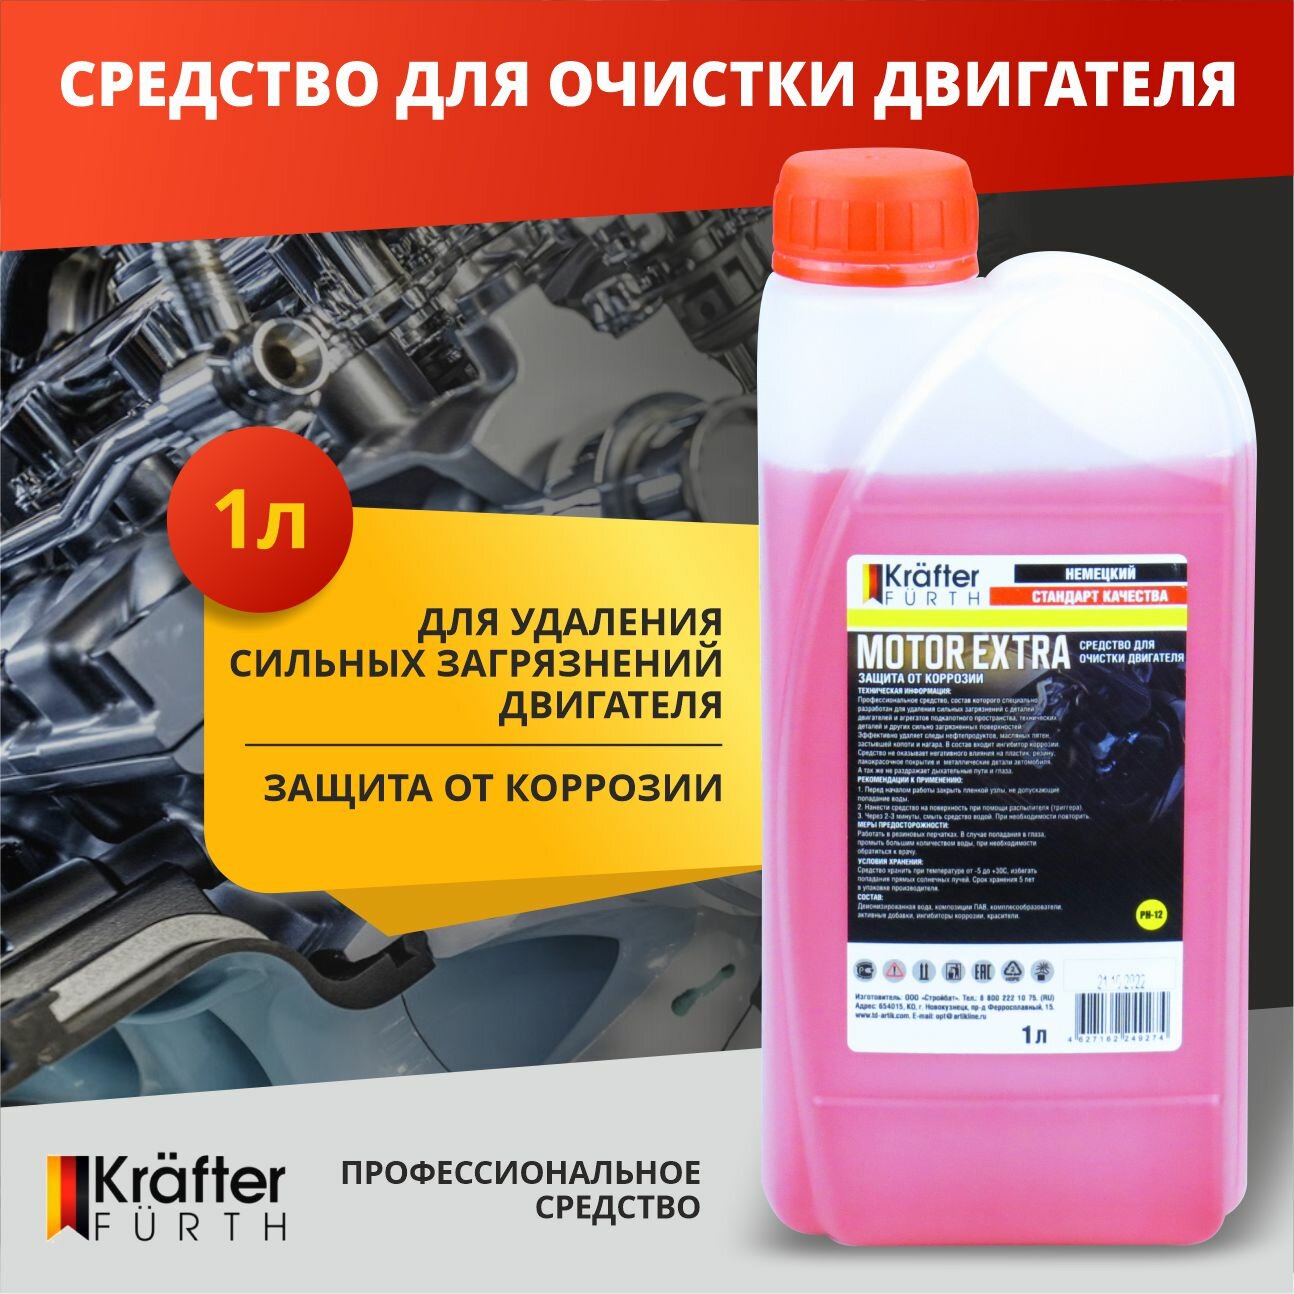 Средство для очистки двигателя автомобиля "Motor Extra" Krafter Furth 1 кг